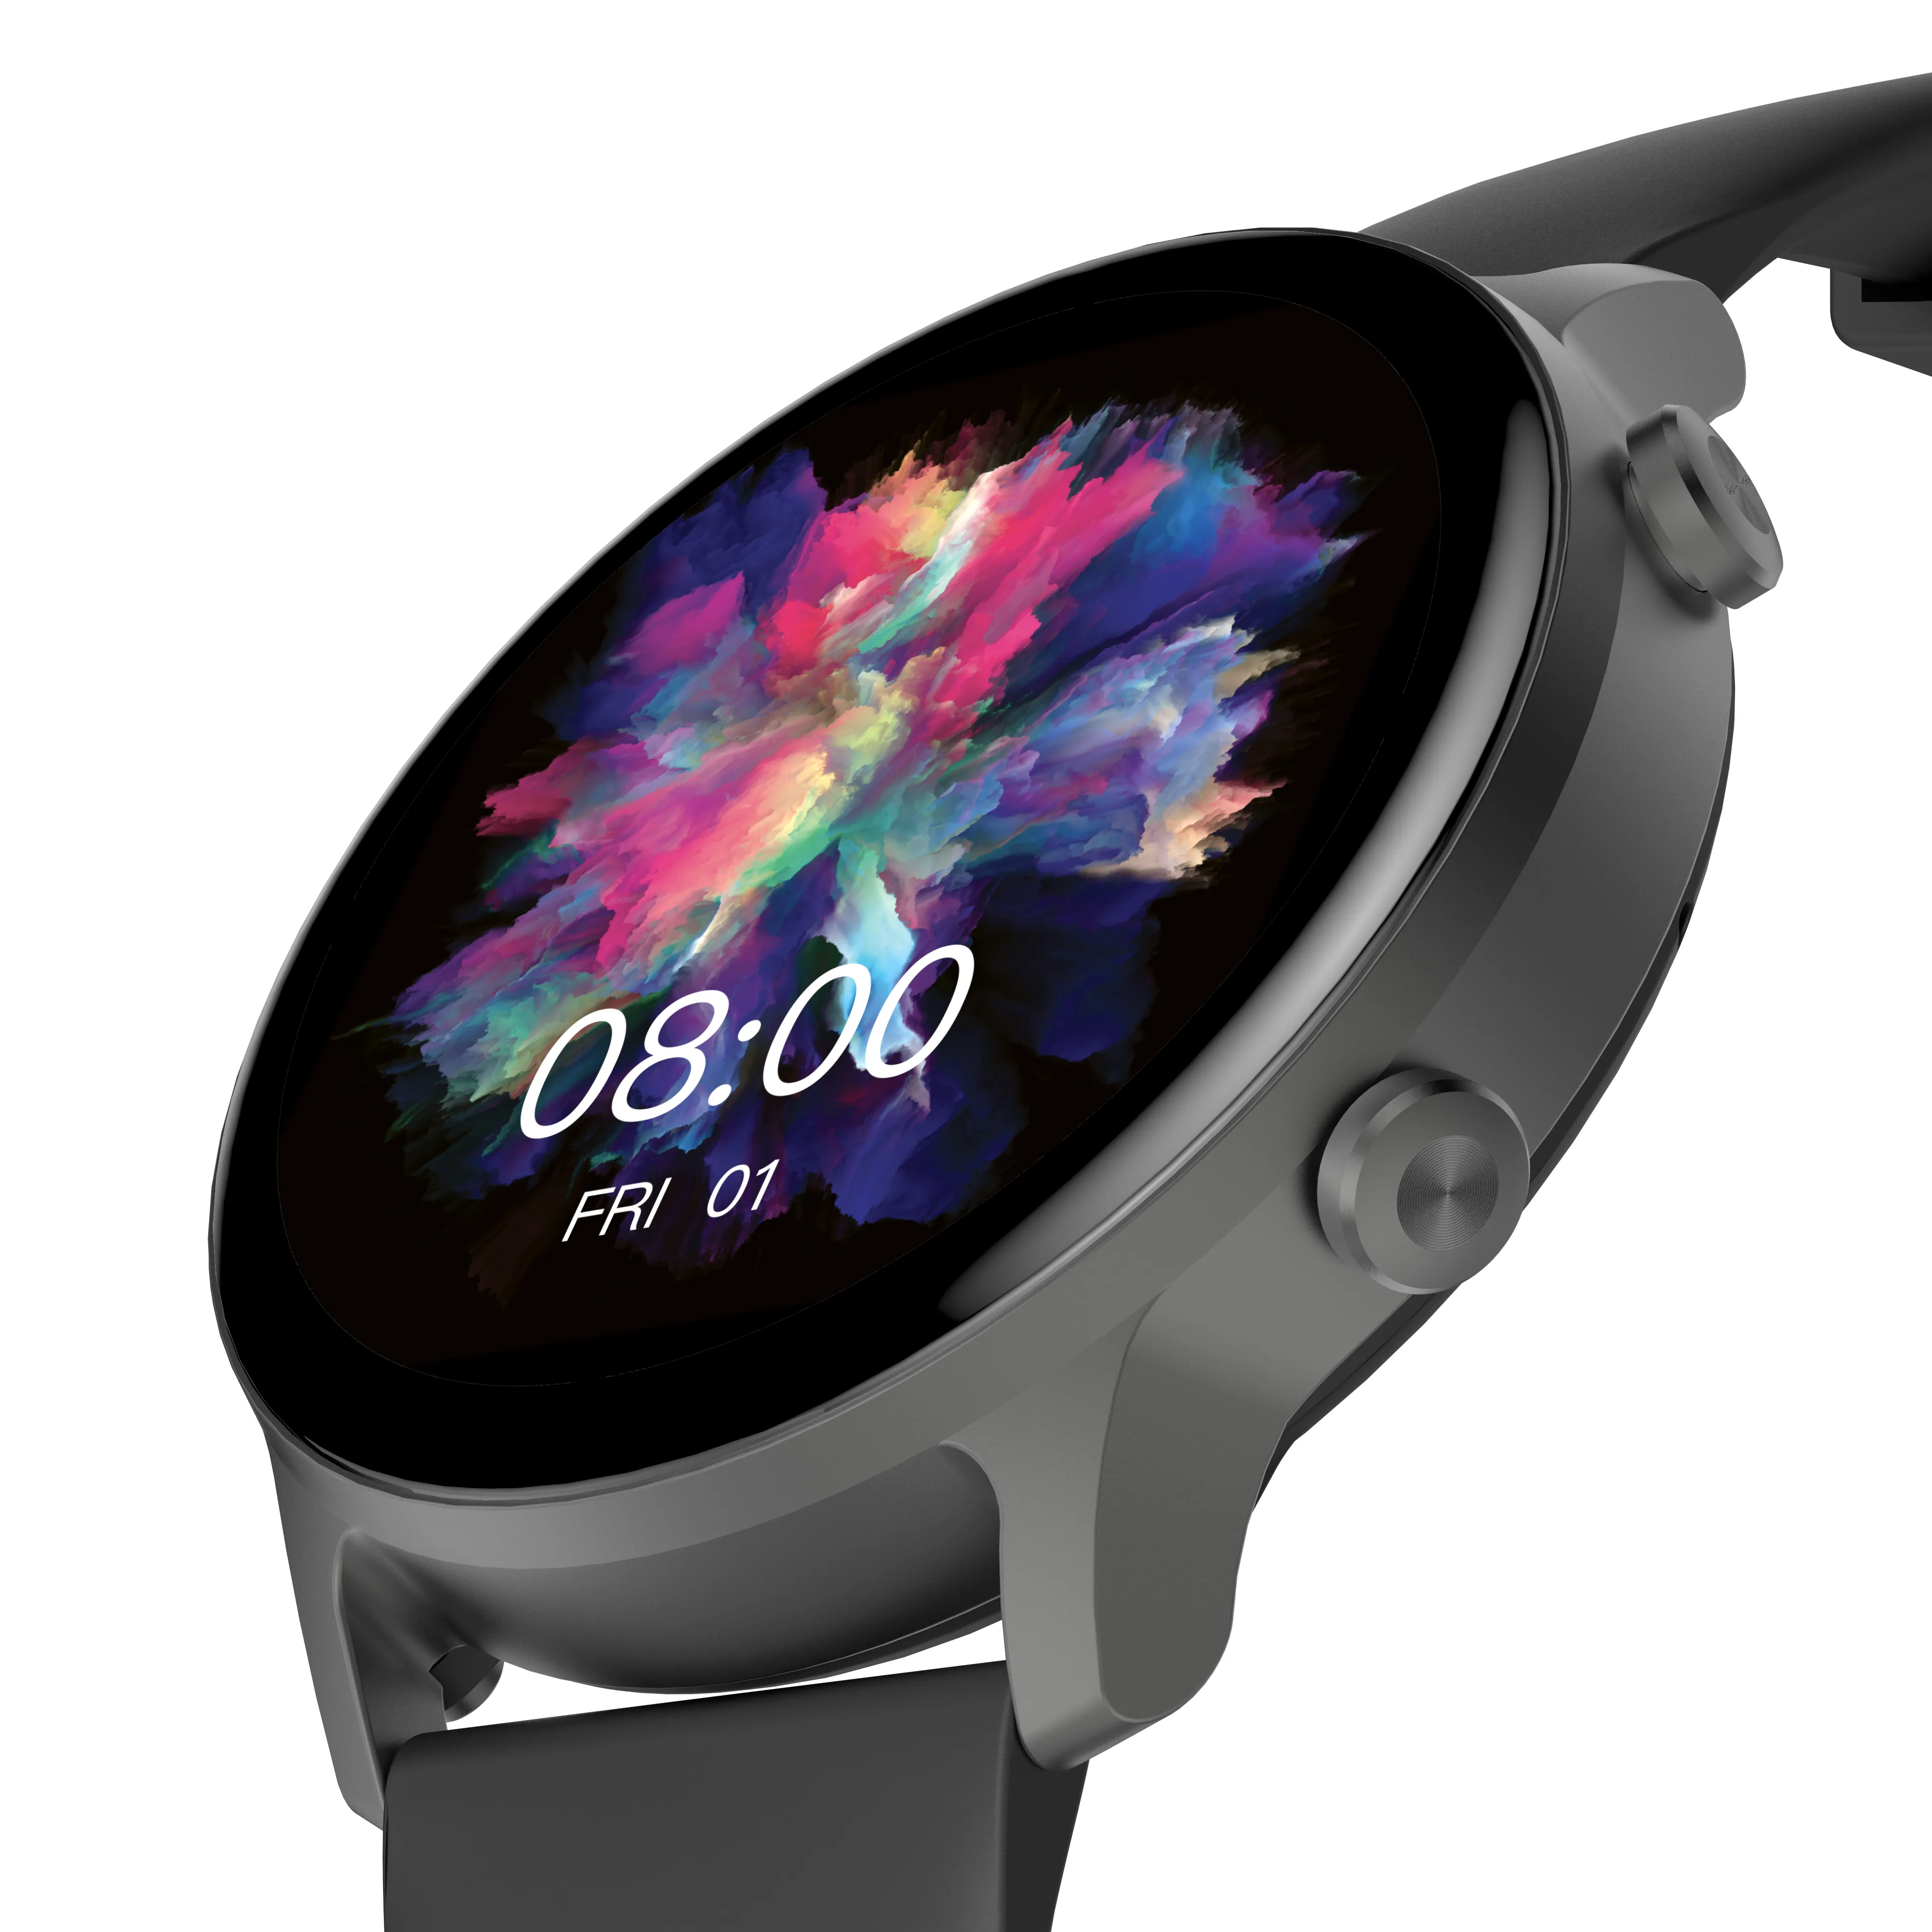 Kingwear sports waterproof men smart bracelet Android reloj fashion smart watch for men women